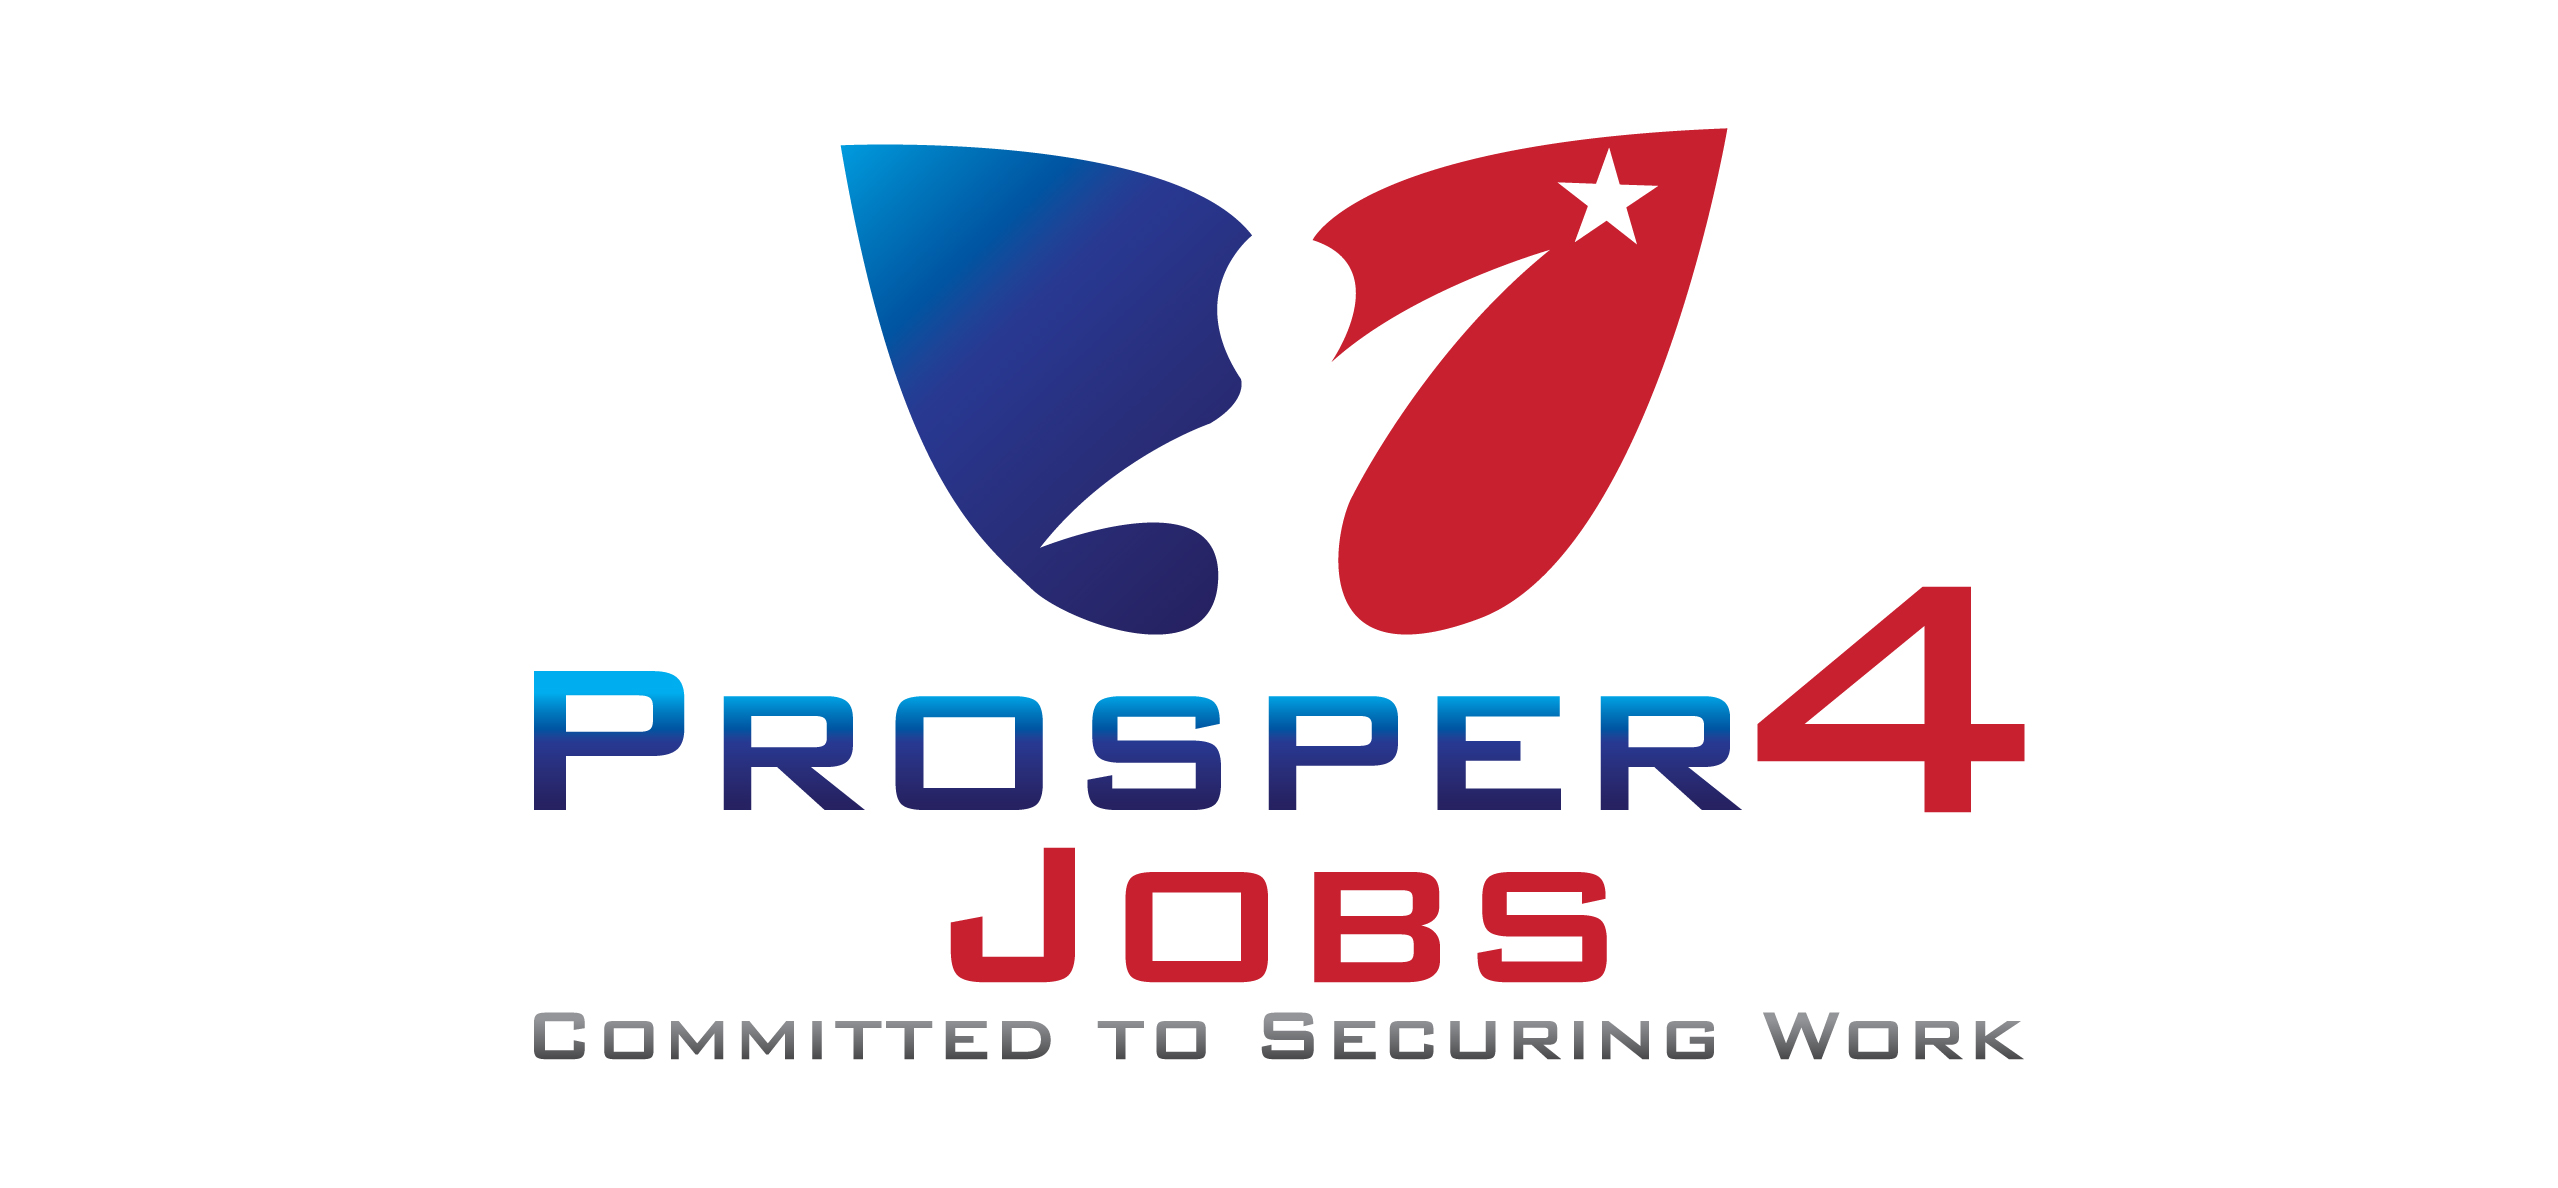 Prosper 4 Jobs CIC